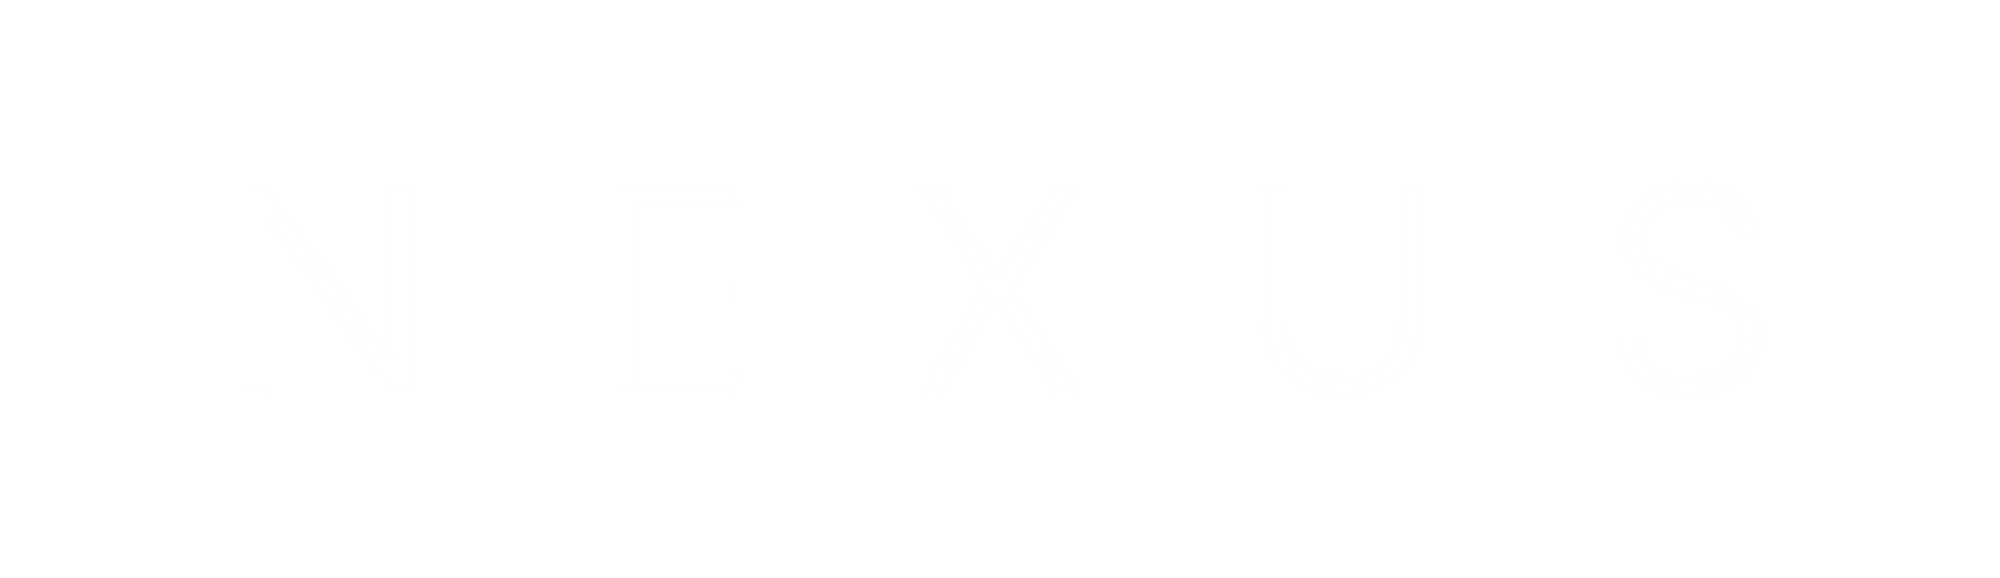 Nexus Labs